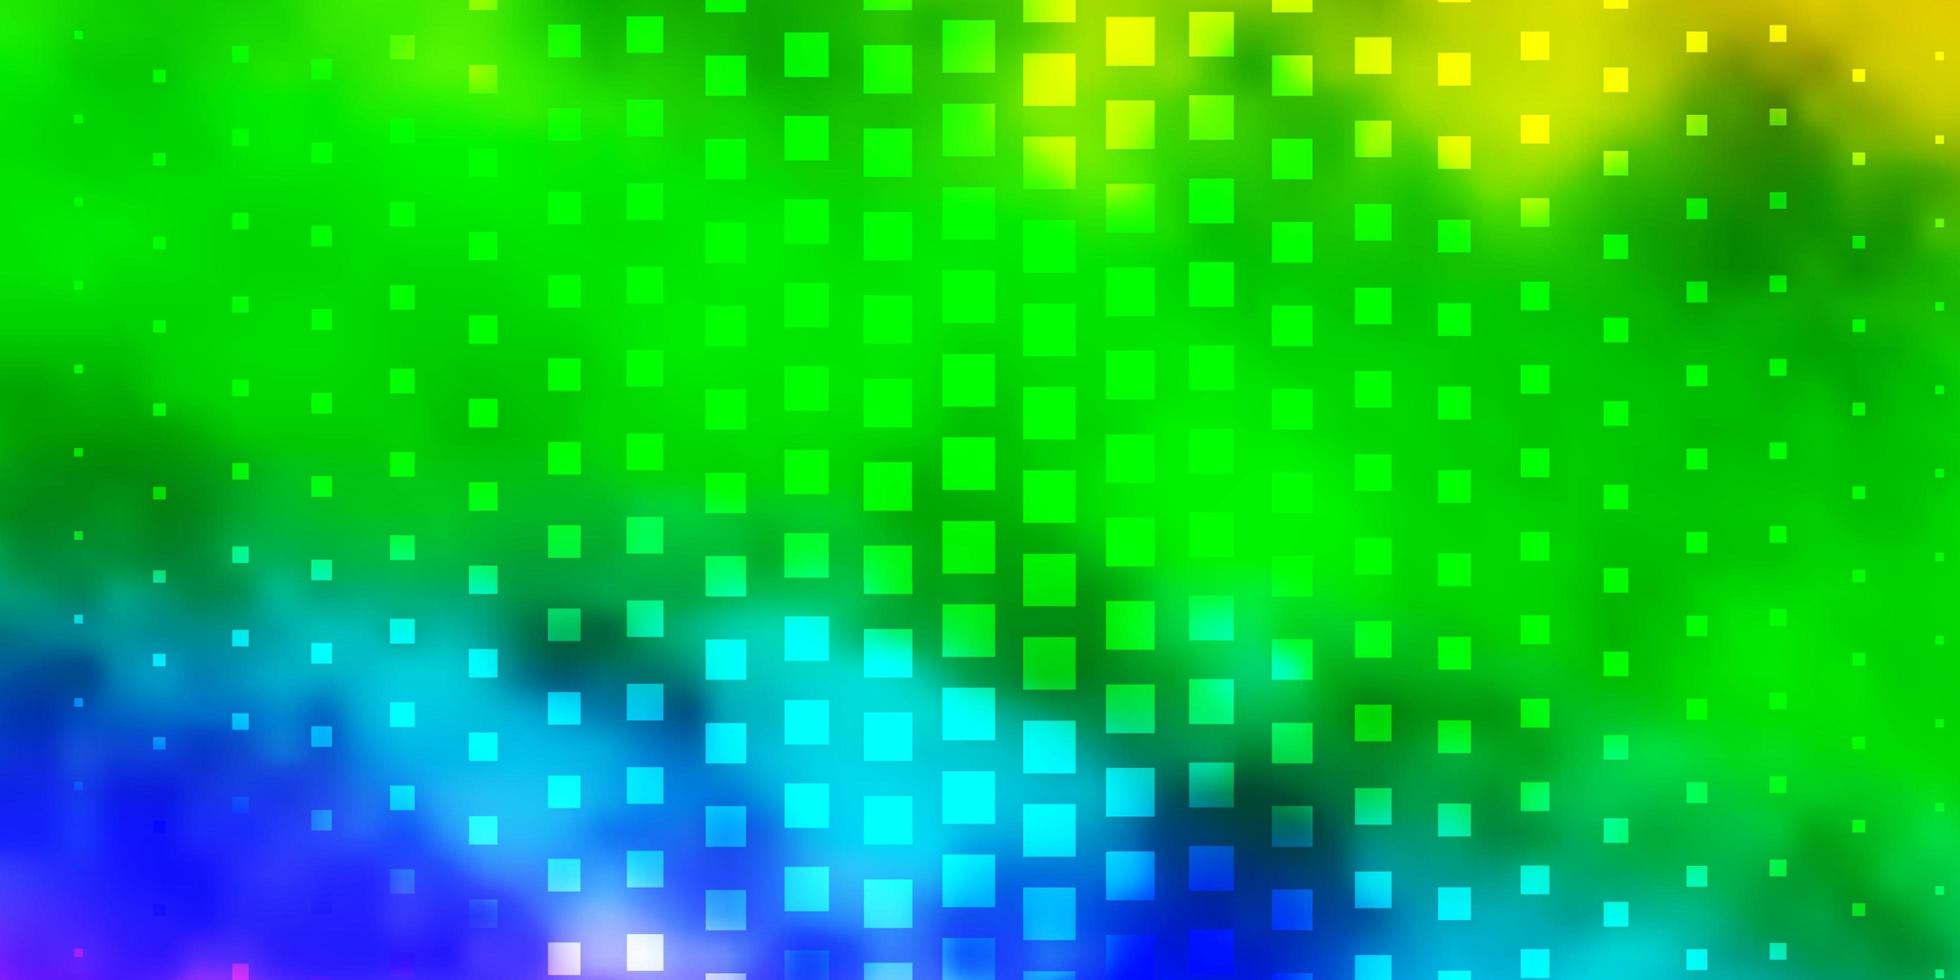 modèle de vecteur multicolore clair dans les rectangles. illustration colorée avec des rectangles et des carrés dégradés. modèle pour téléphones portables.